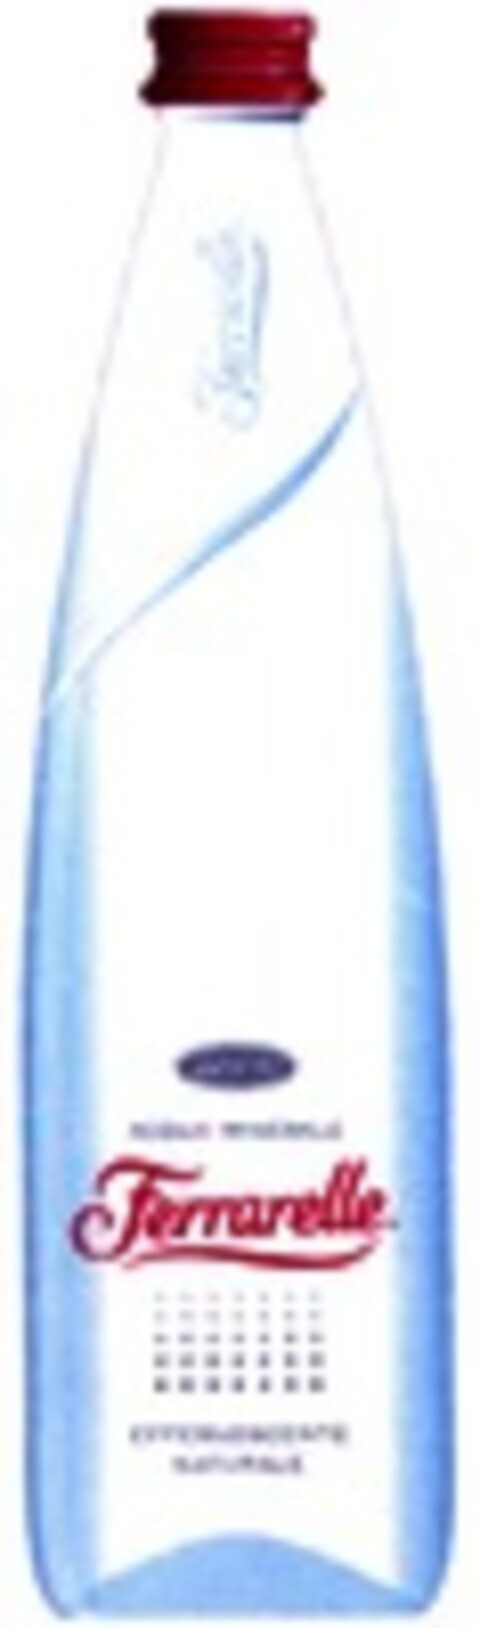 Ferrarelle ACQUA MINERALE EFFERVESCENTE NATURALE dal 1893 Logo (WIPO, 11.06.2008)